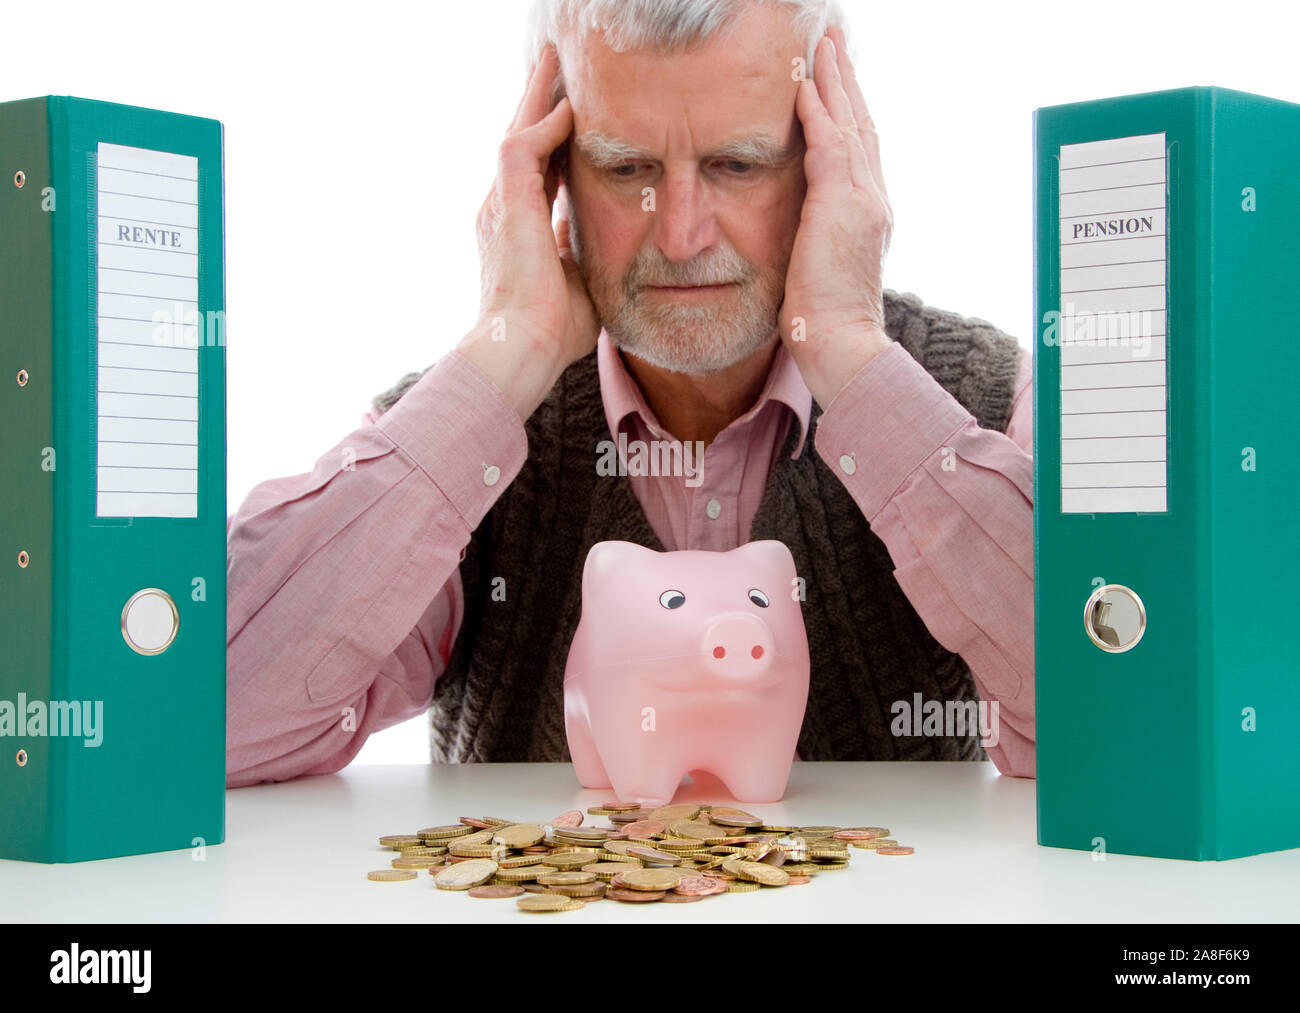 Rentner mit Geldsorgen, sitzt Sparschwein vor und verzweifelt, signor: Sì Foto Stock